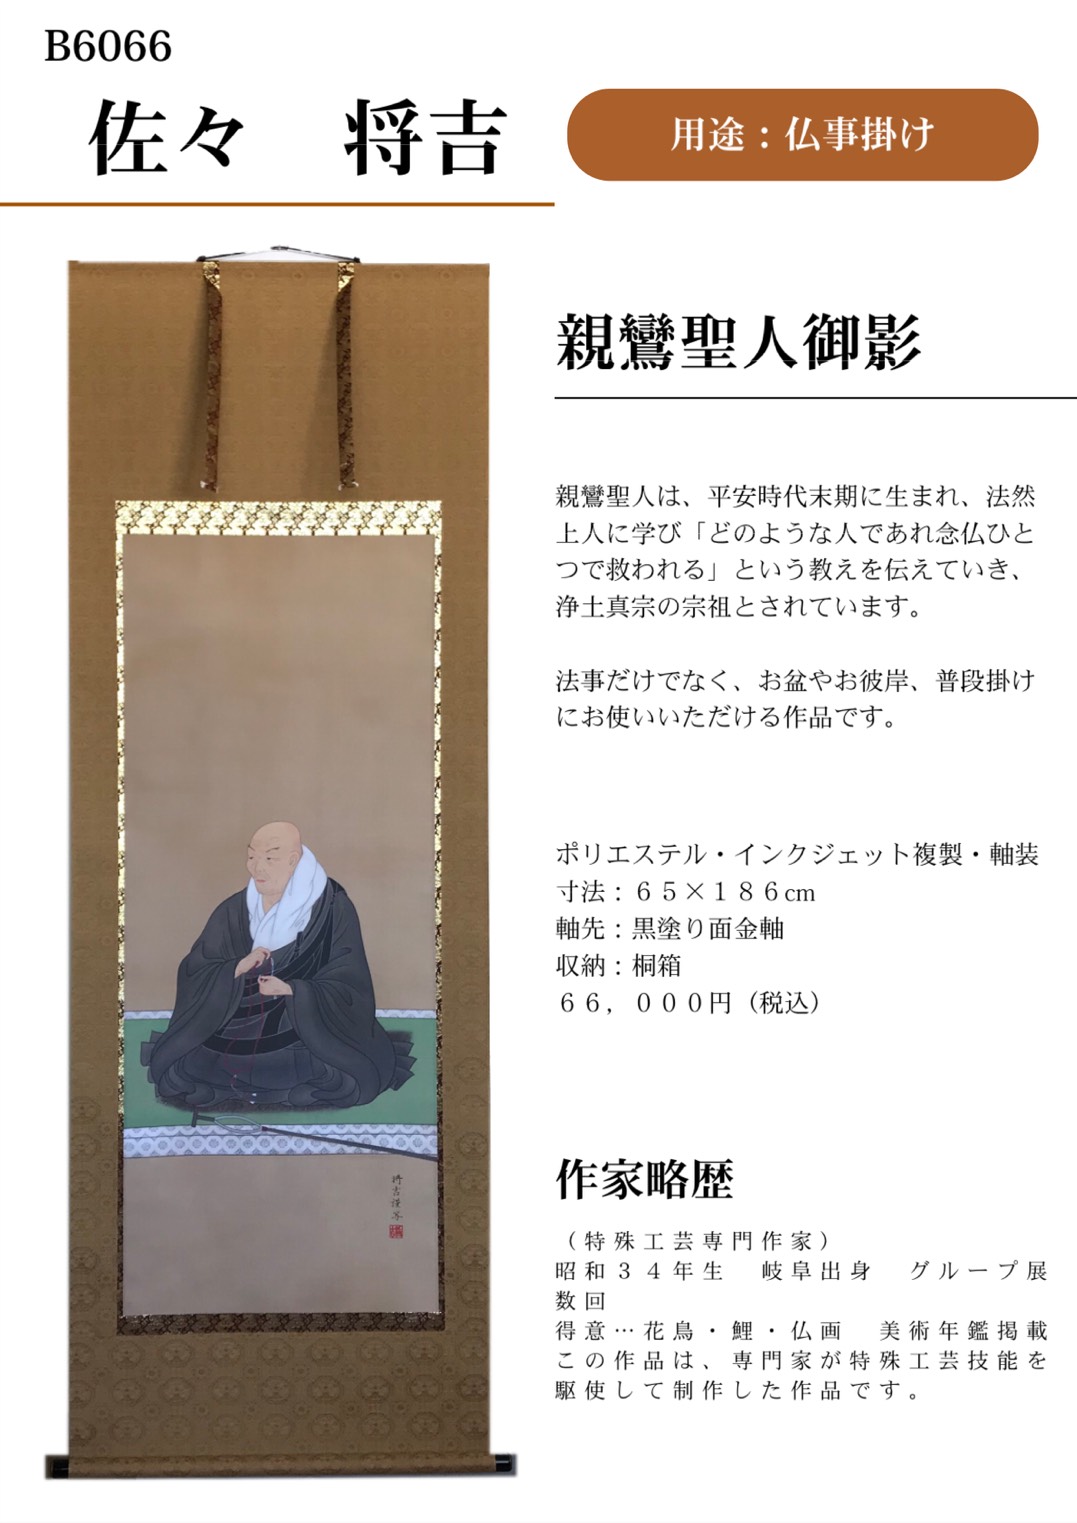 日本の家庭行事「葬祭」 | 岐阜の掛軸(掛け軸)メーカー偕拓堂アート